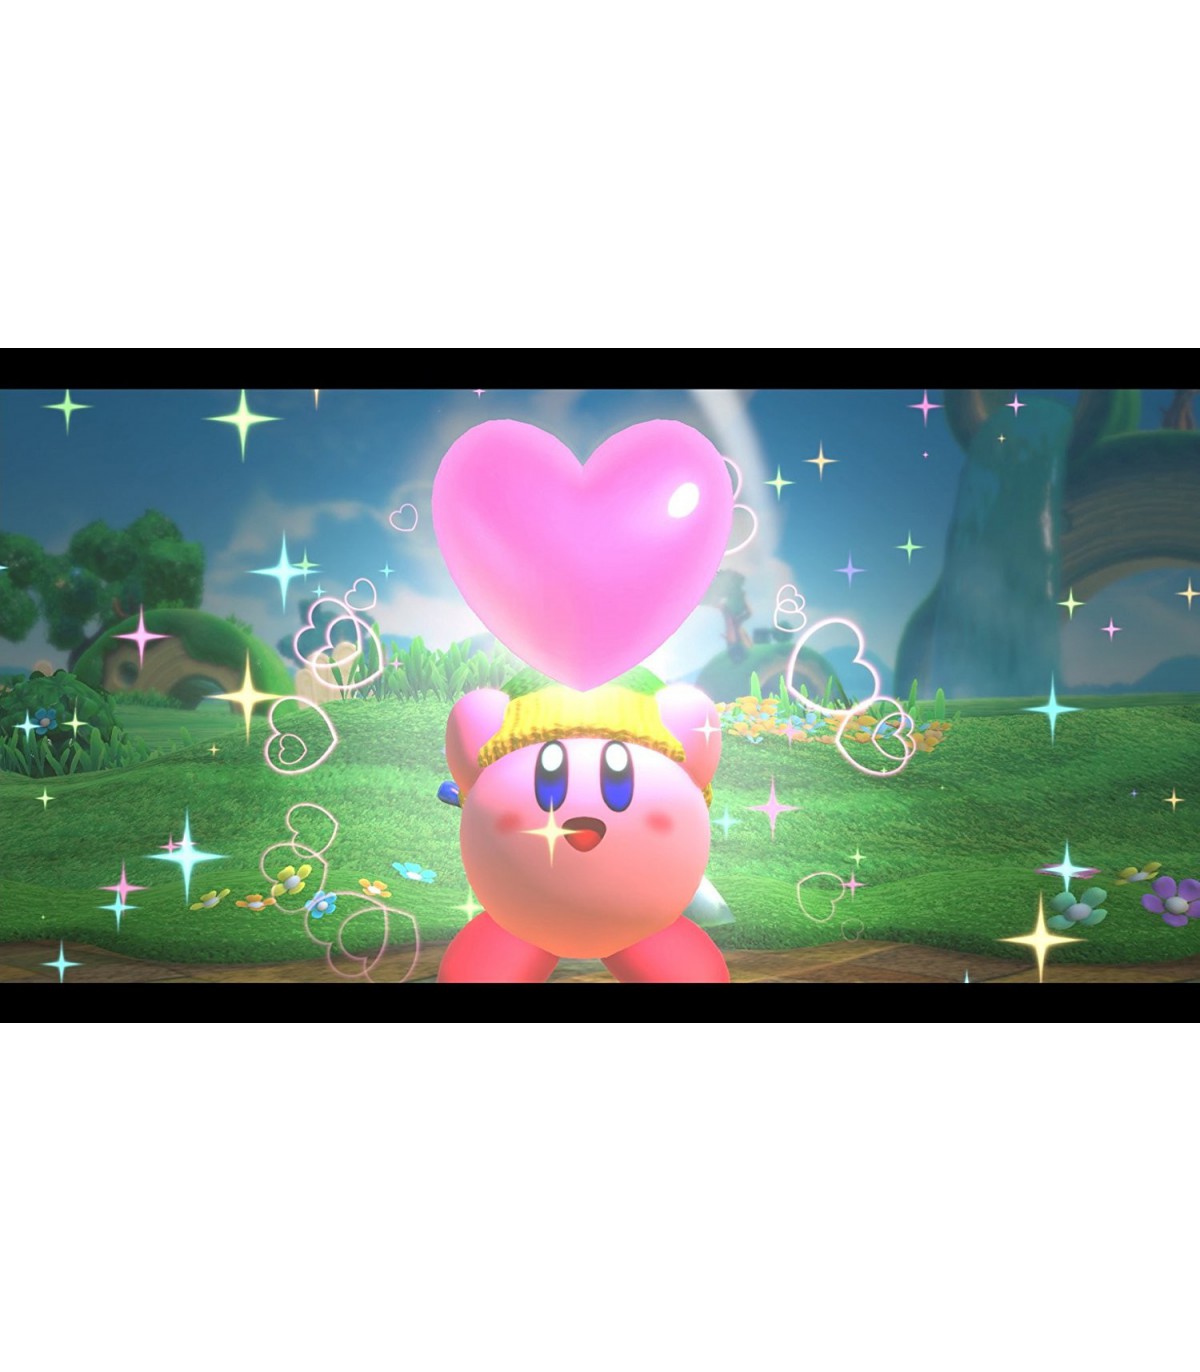 بازی Kirby Star Allies- نینتندو سوئیچ